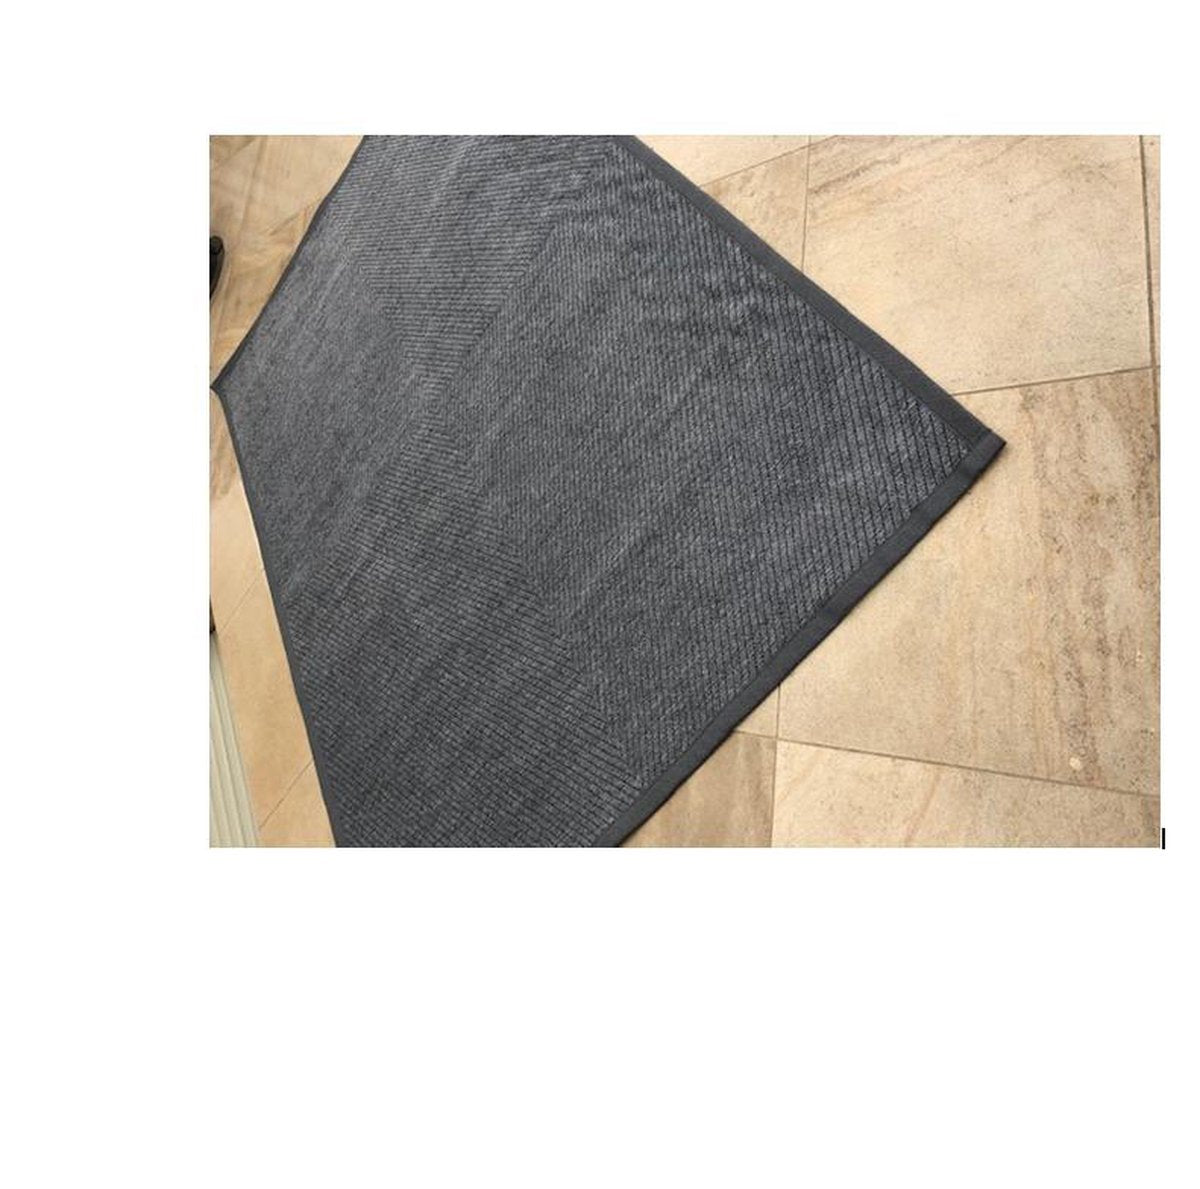 Exclusief Vloerkleed Viva recto verso - tweezijdig vloerkleed - gratis antislip bijgeleverd - grijs grey - 160/230 cm - tapijt - gestreept en visgraat